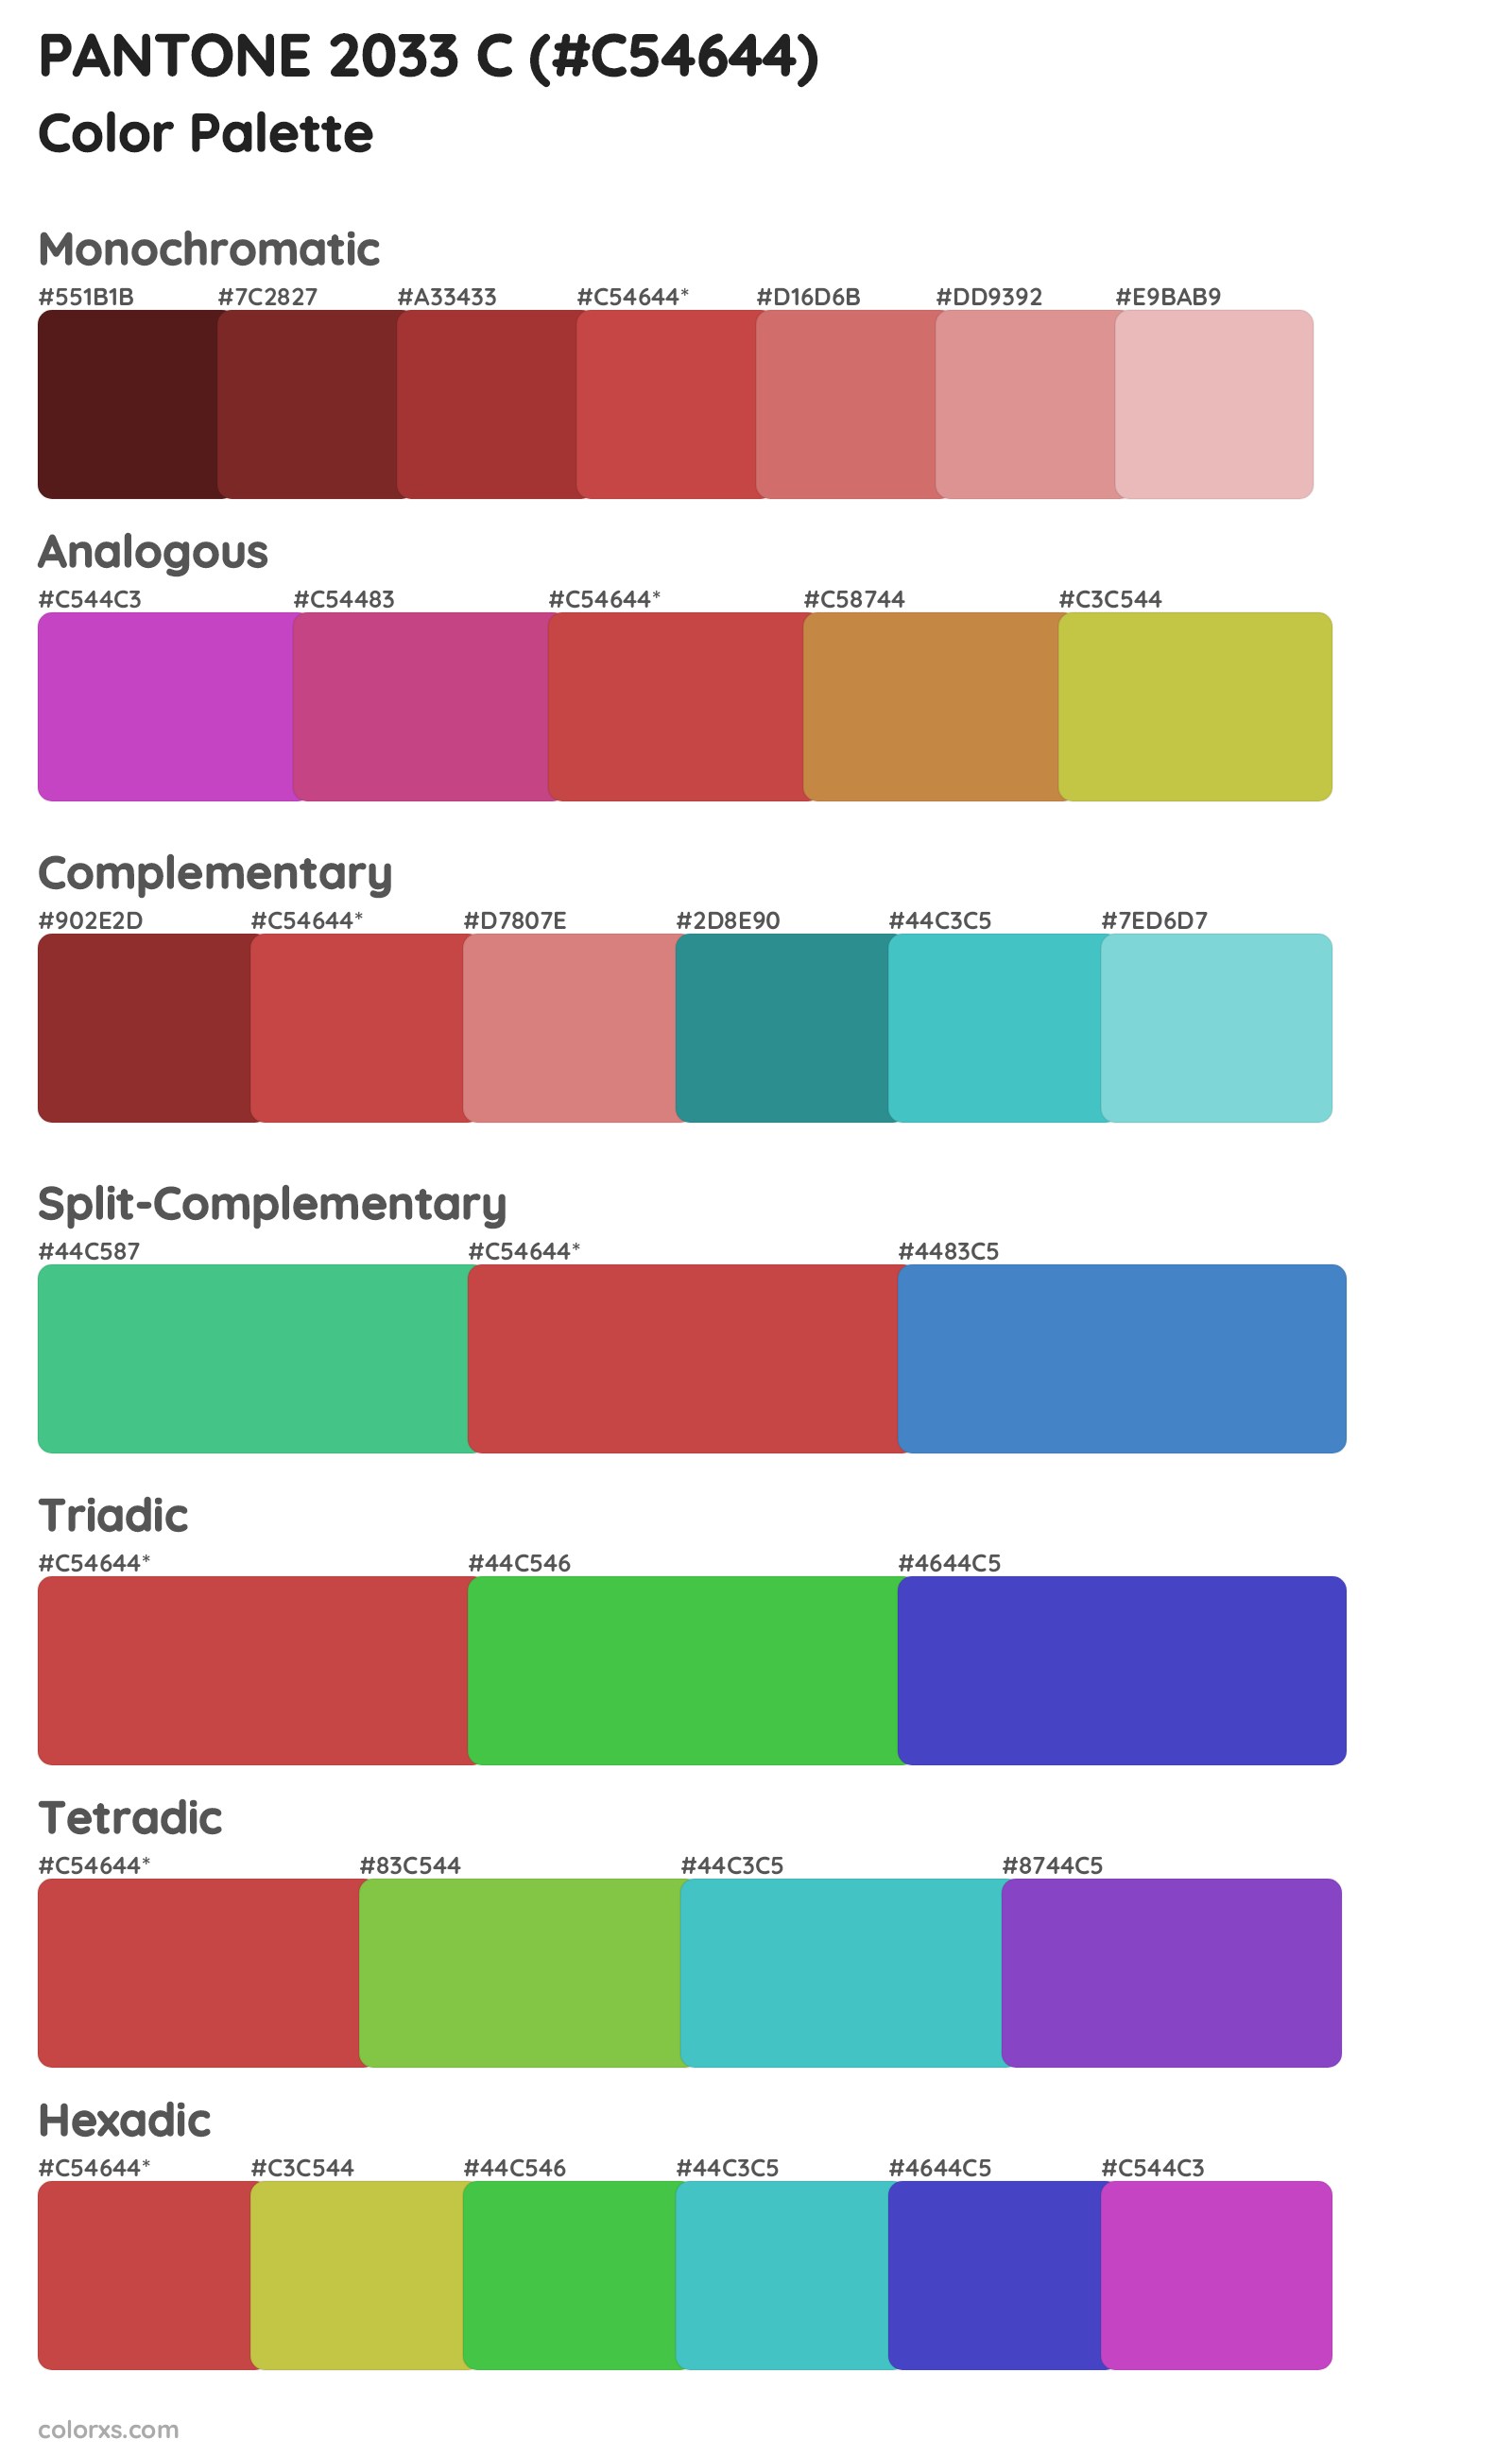 PANTONE 2033 C Color Scheme Palettes